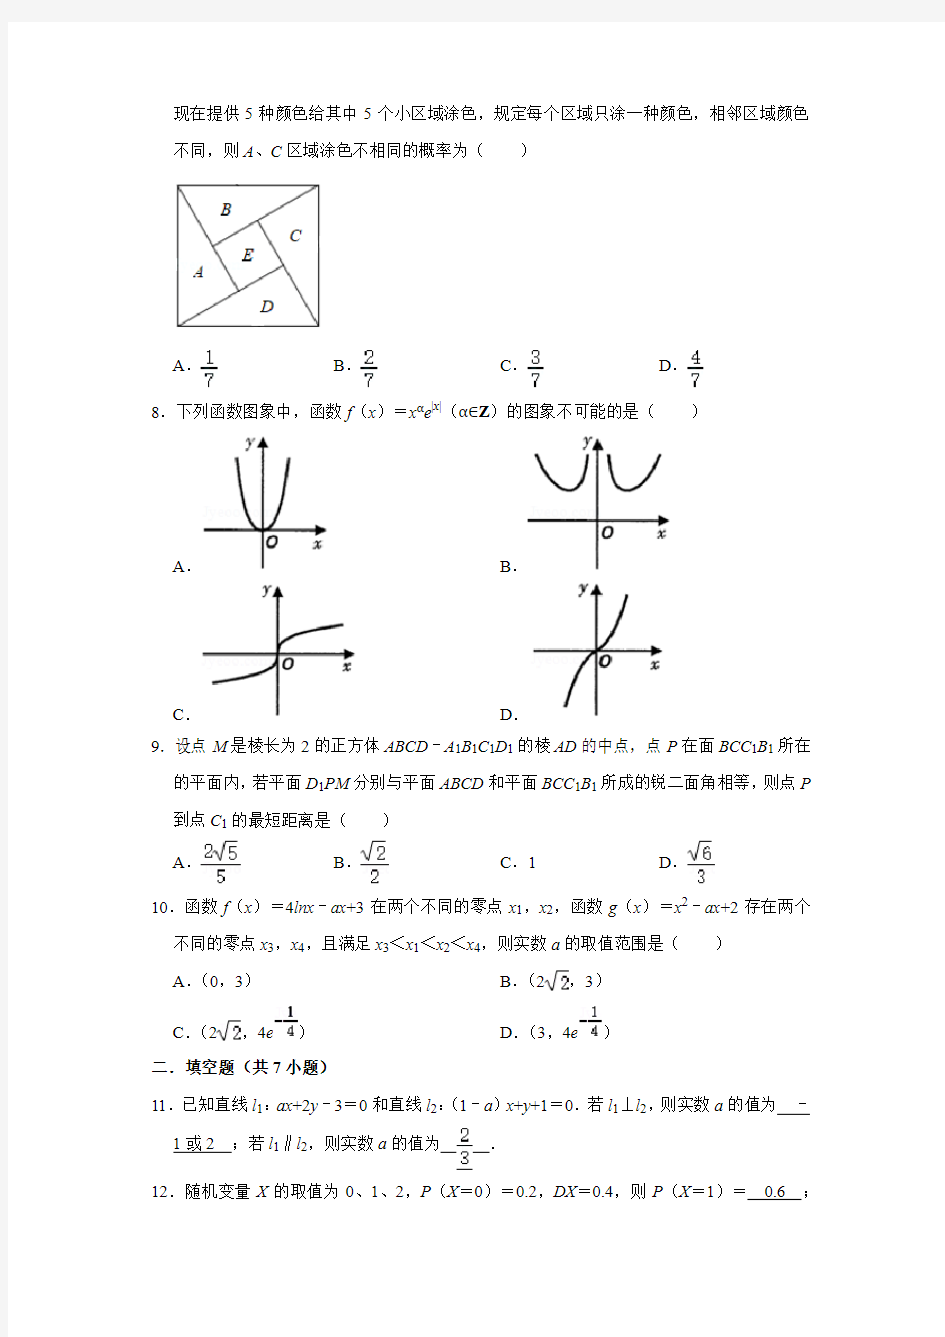 2020年浙江省杭州市高考数学模拟试卷(4月份)